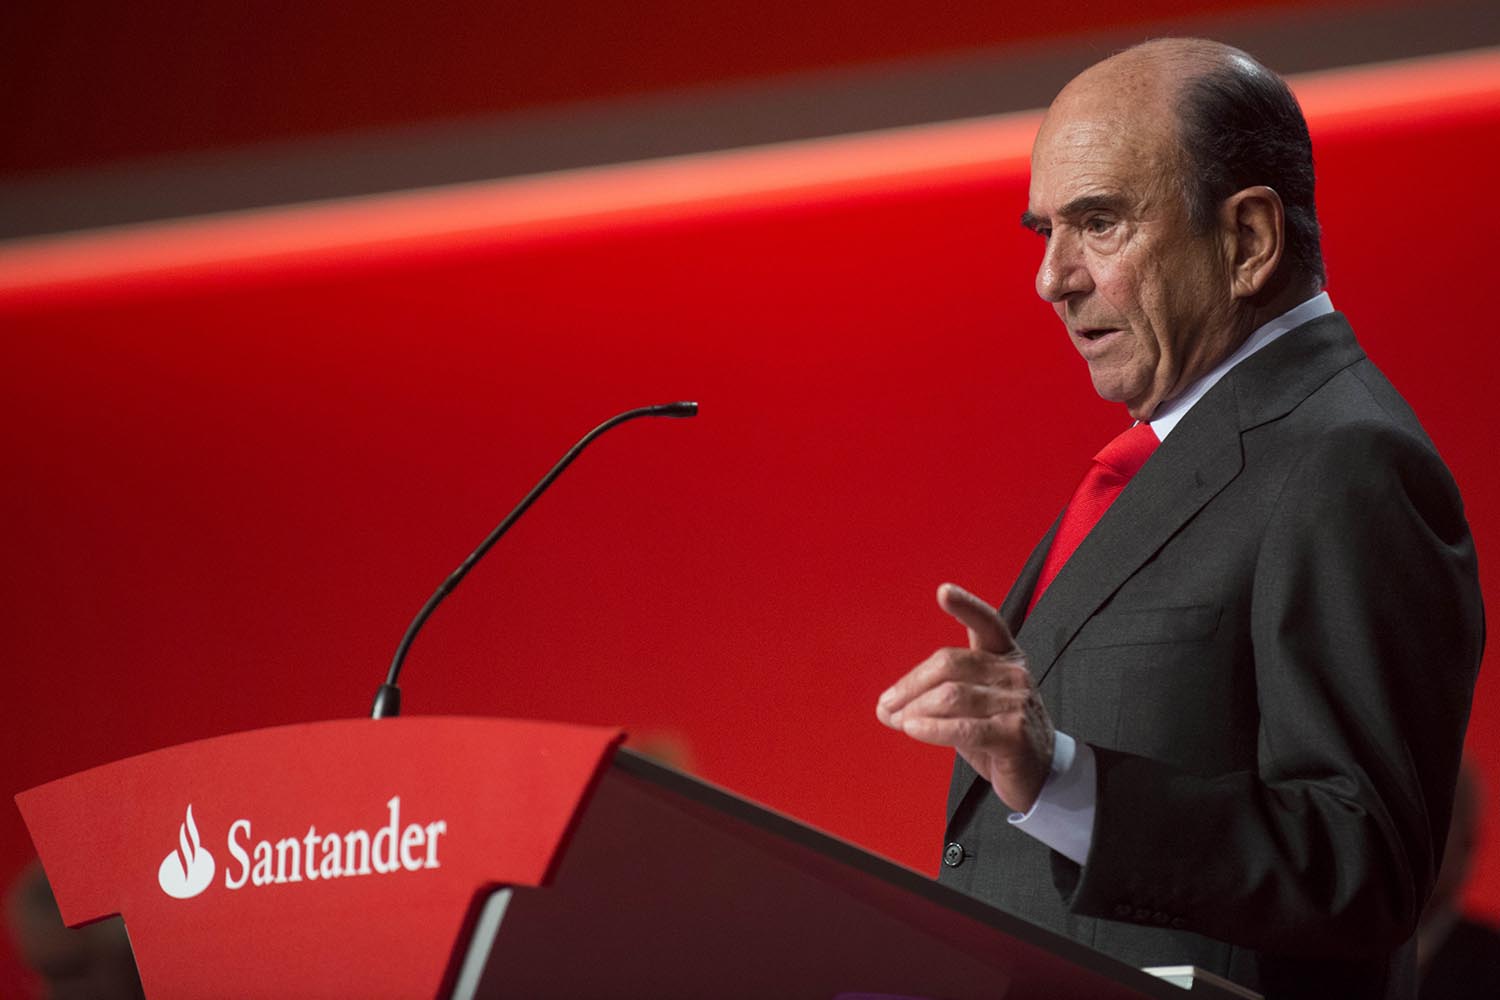 El presidente del banco Santander celebra la vuelta de la confianza financiera en España